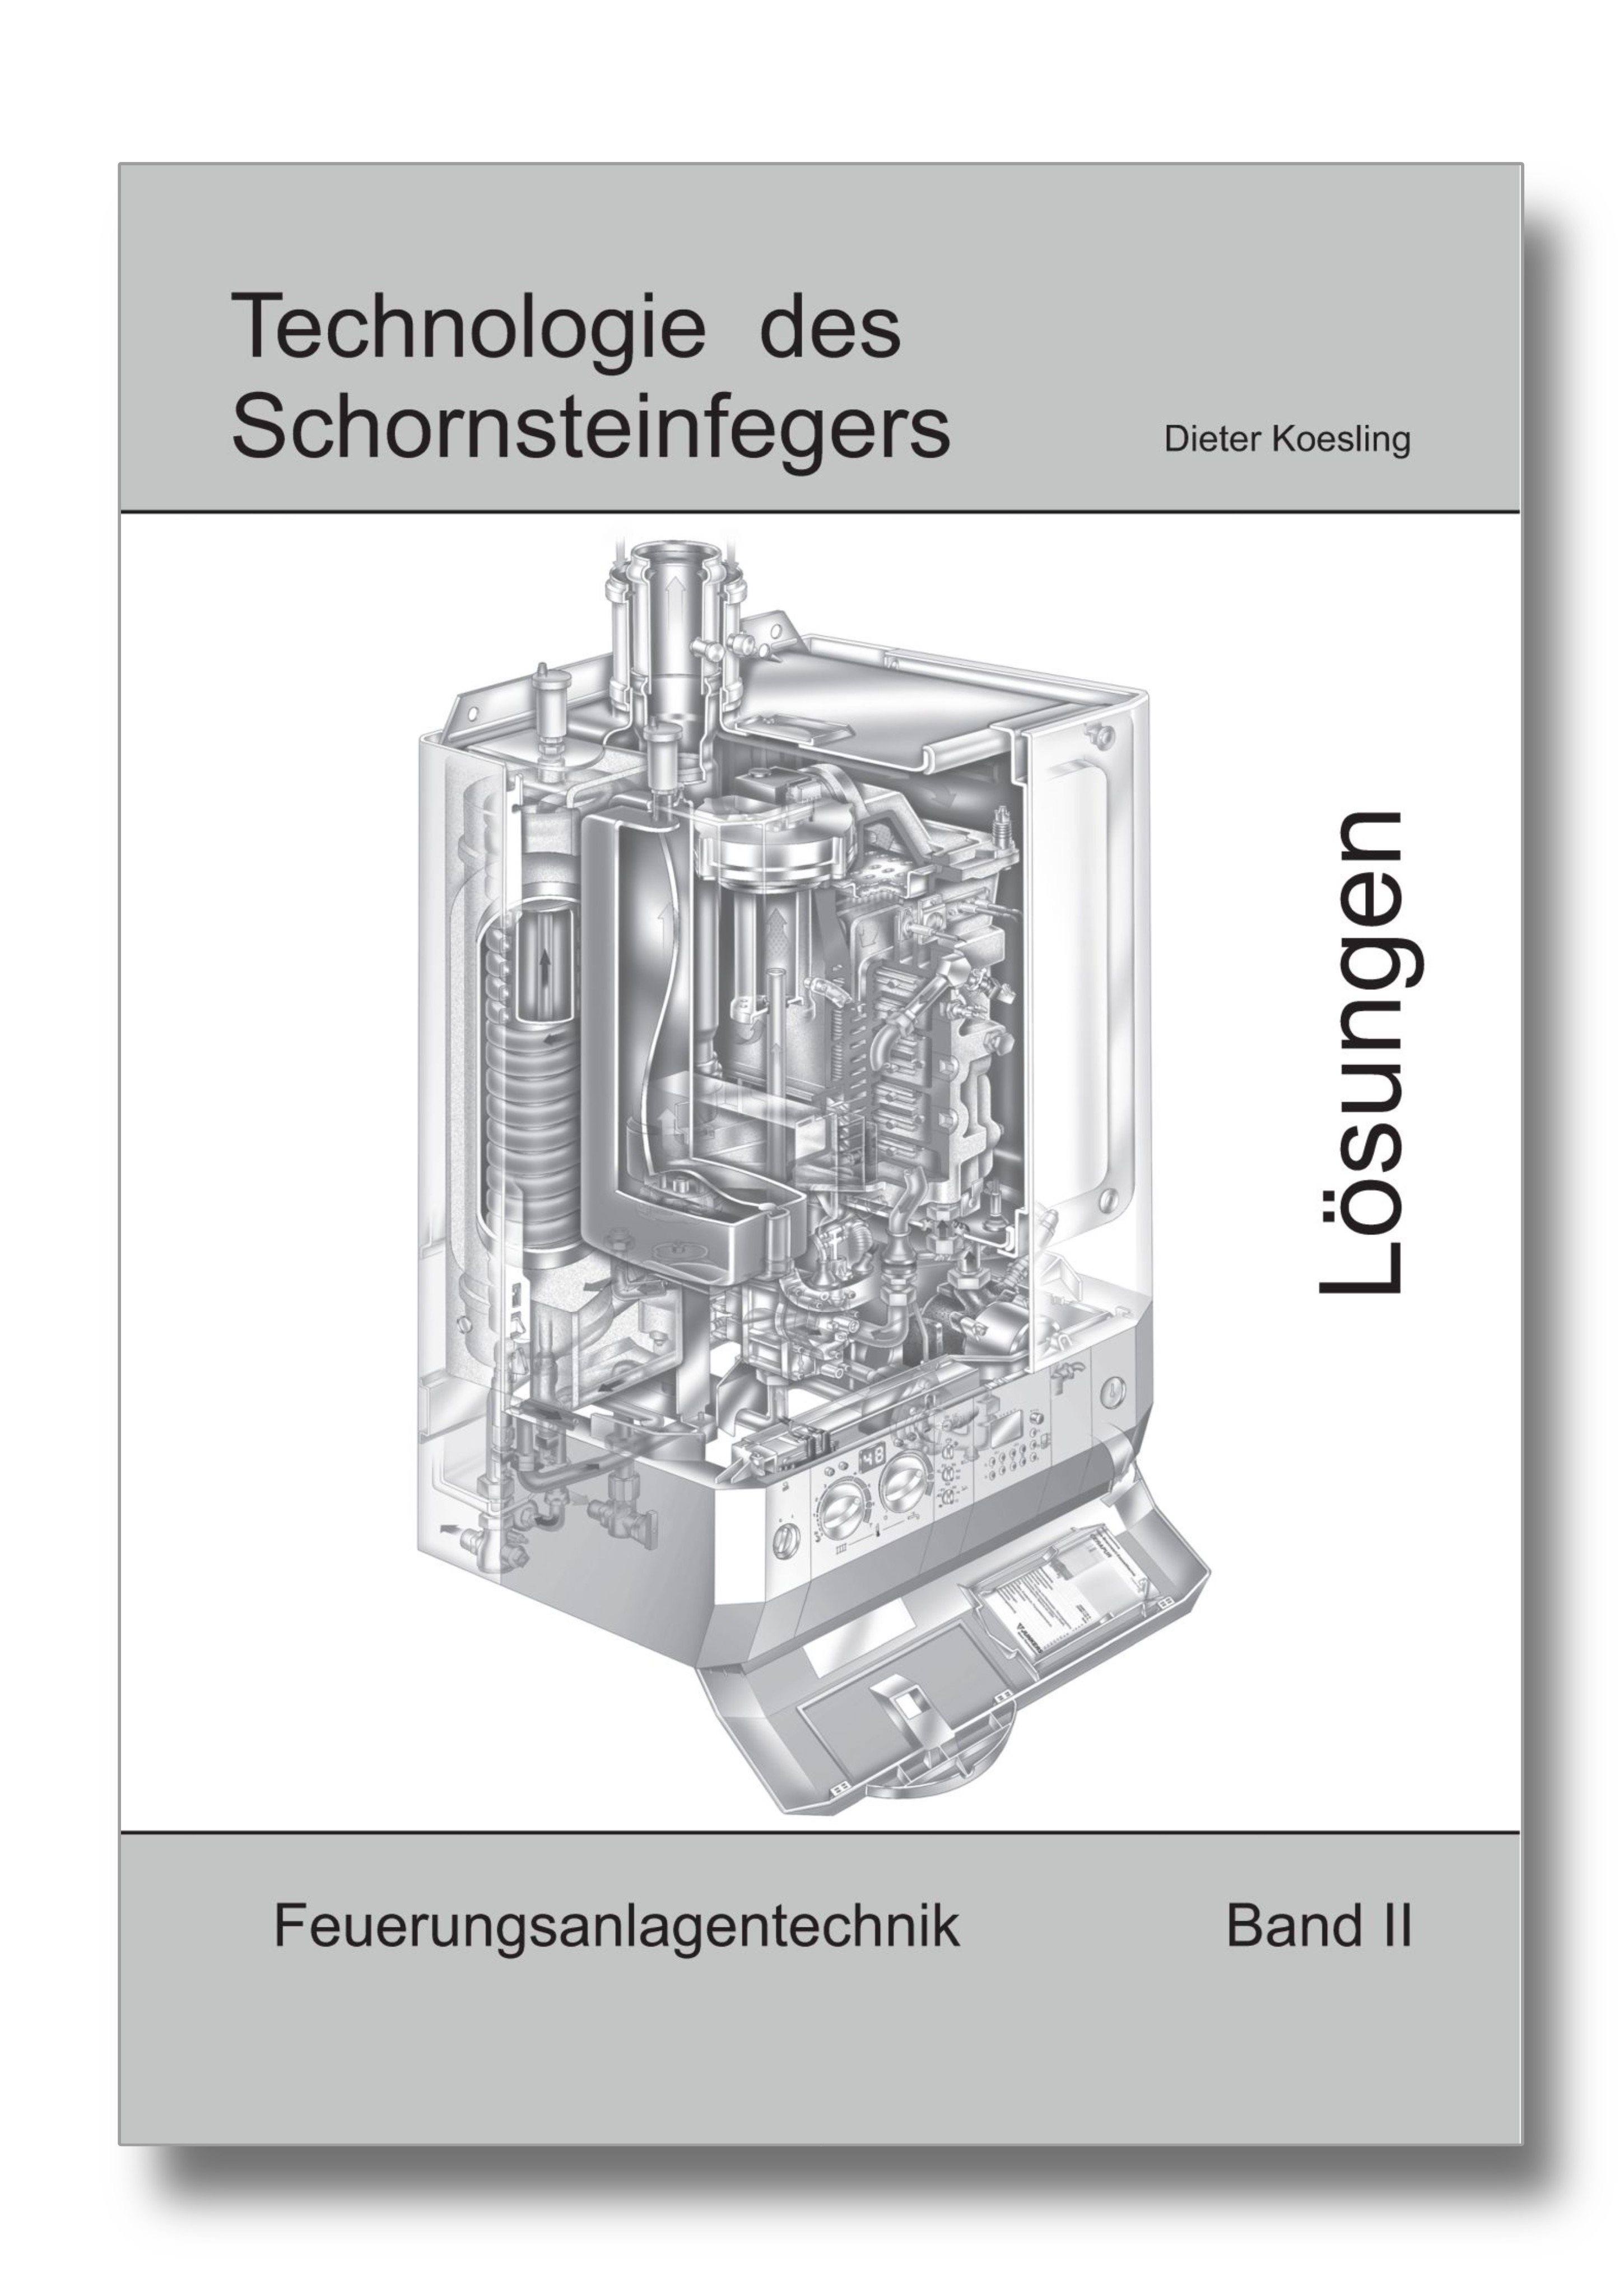 Technologie des Schornsteinfegers - Band II Lösungen -  Feuerungsanlagentechnik, 5. Auflage